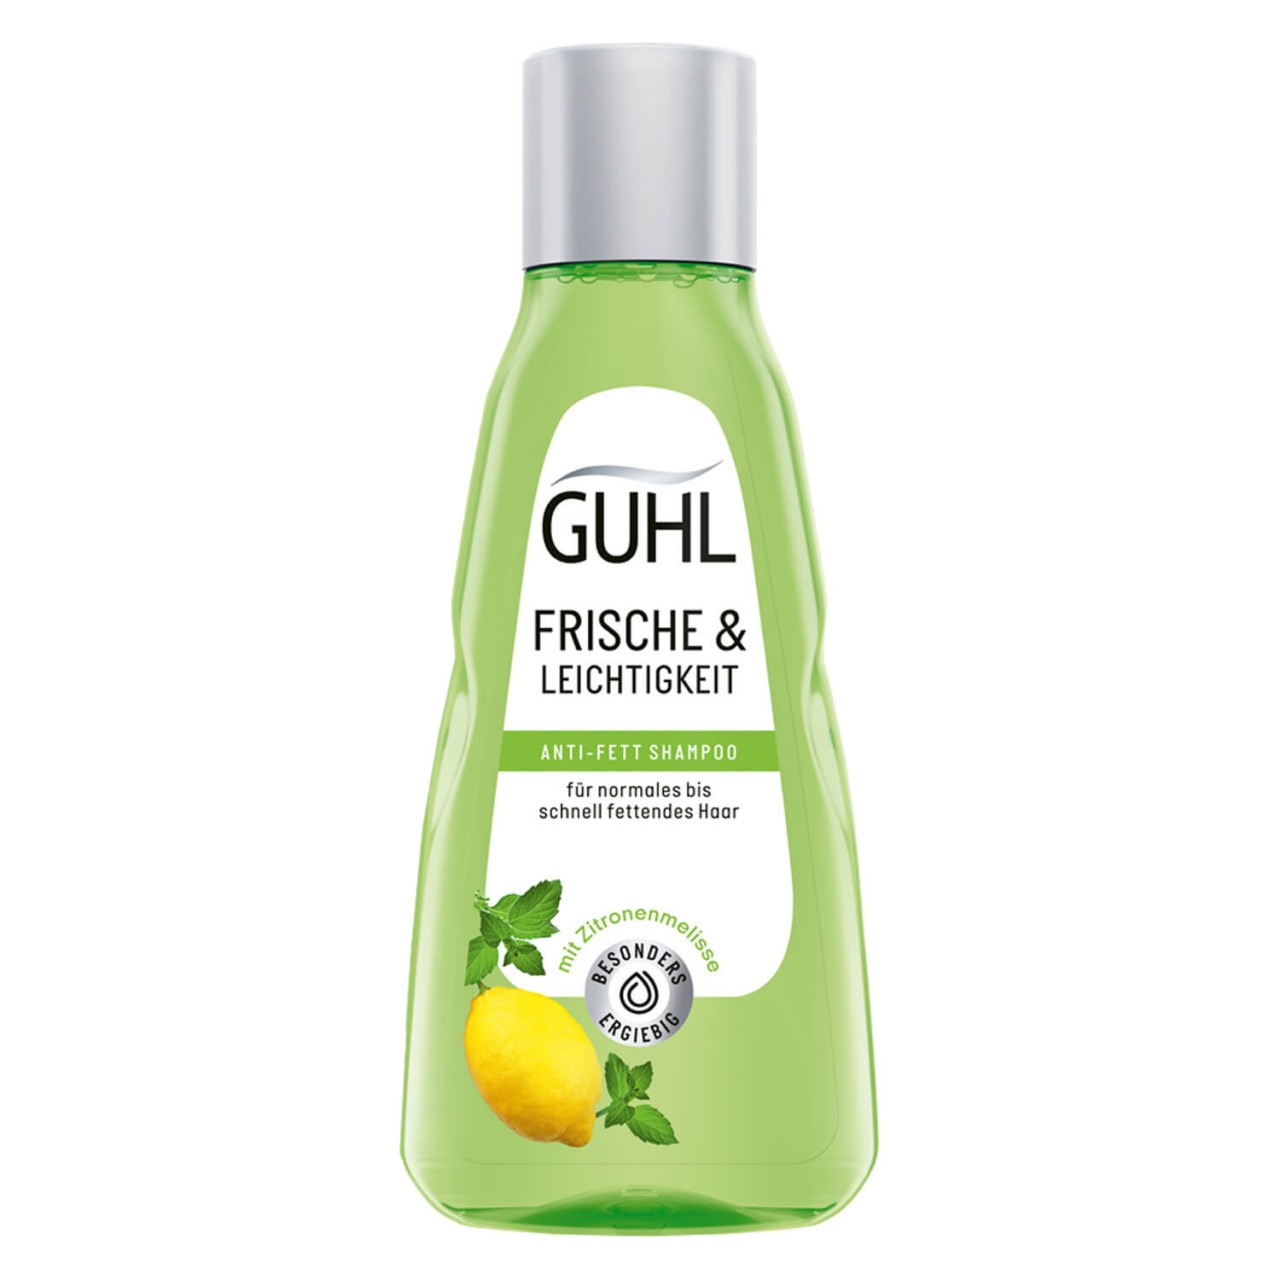 GUHL - FRISCHE & LEICHTIGKEIT Anti-Fett Shampoo von GUHL